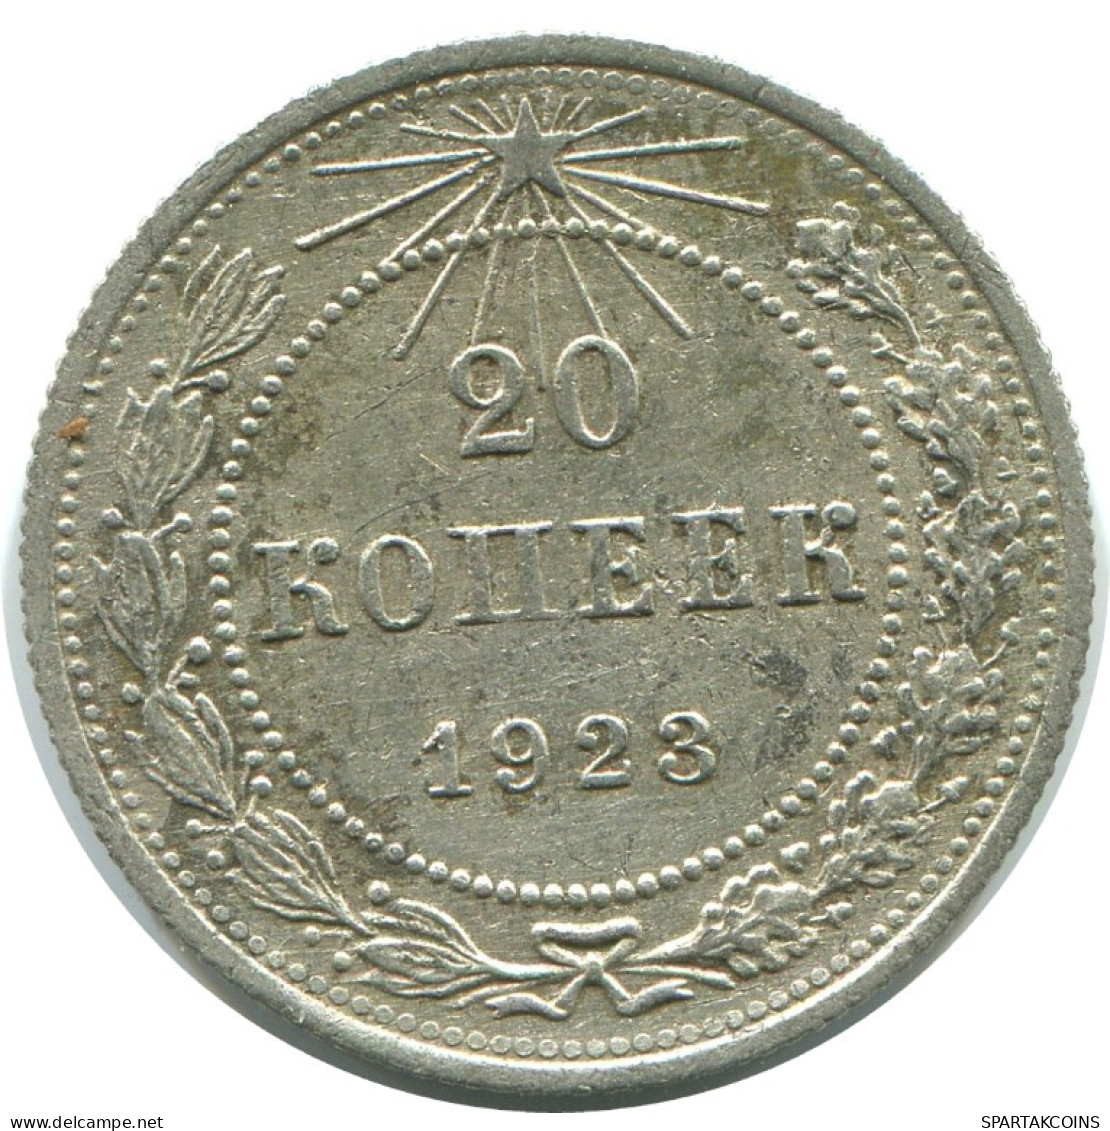 20 KOPEKS 1923 RUSSIA RSFSR SILVER Coin HIGH GRADE #AF496.4.U.A - Russland